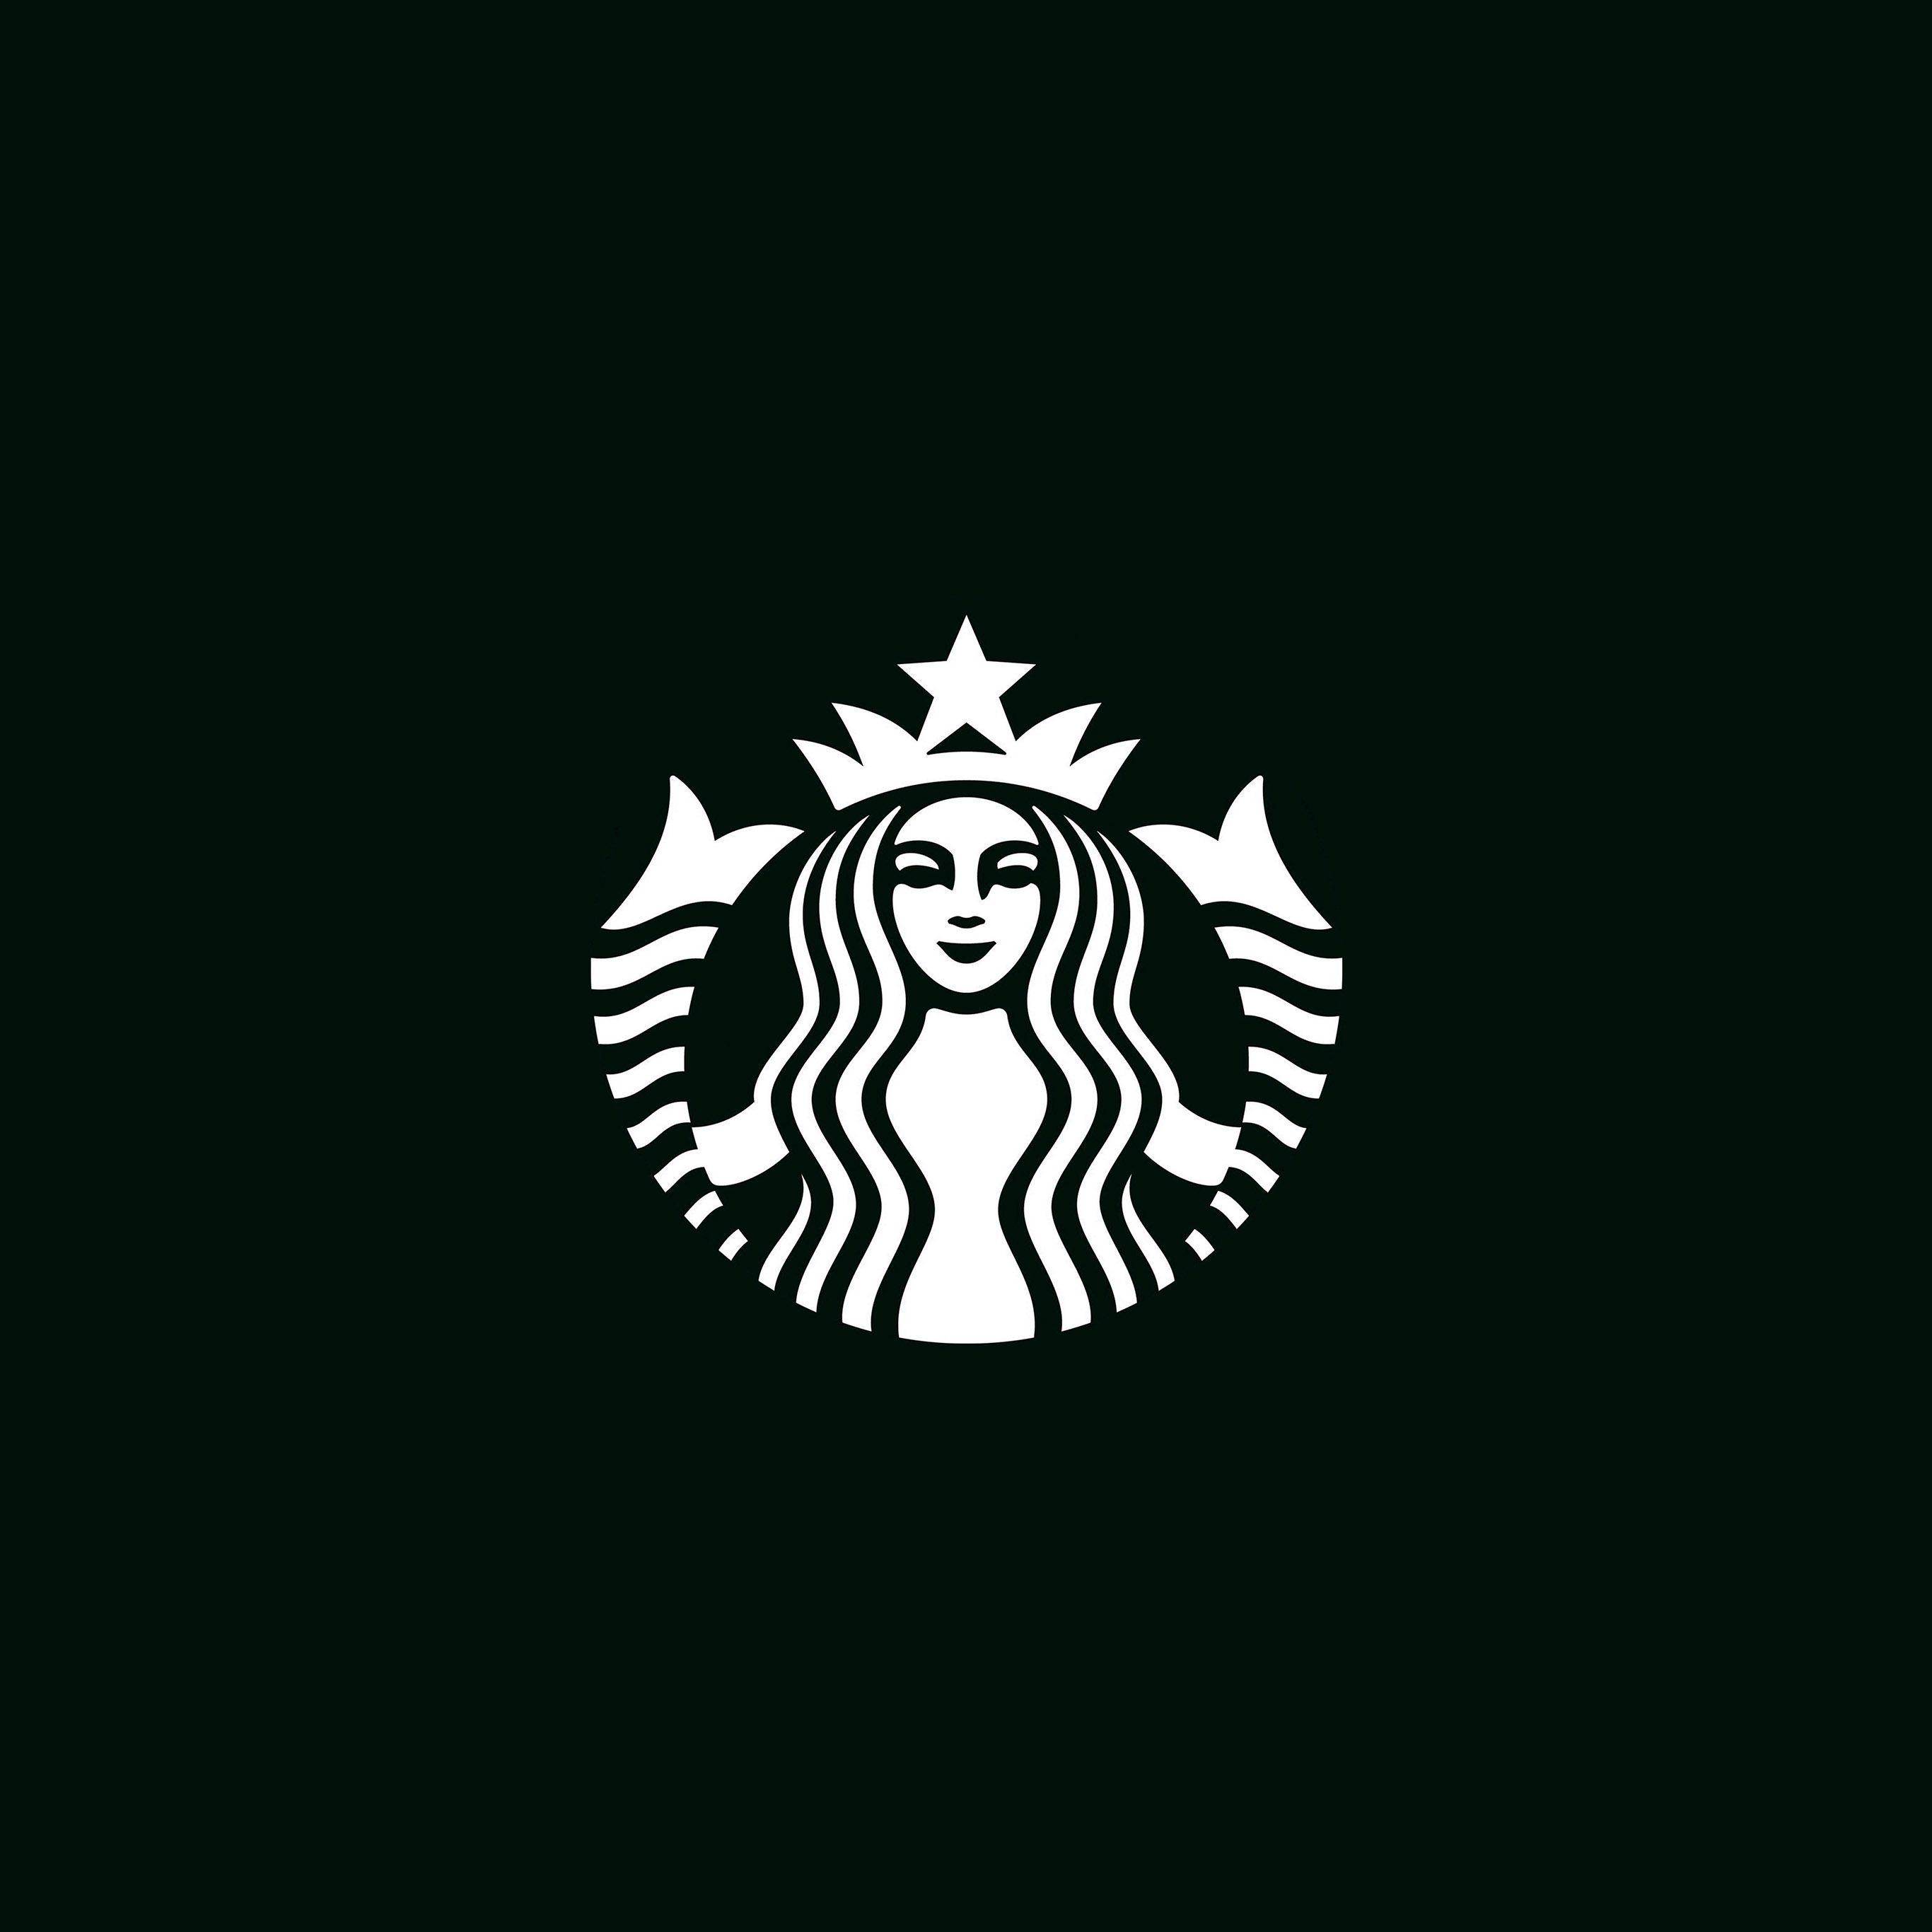 Large Starbucks Logo - I Love Papers | ax30-starbucks-logo-dark-bw-illustration-art